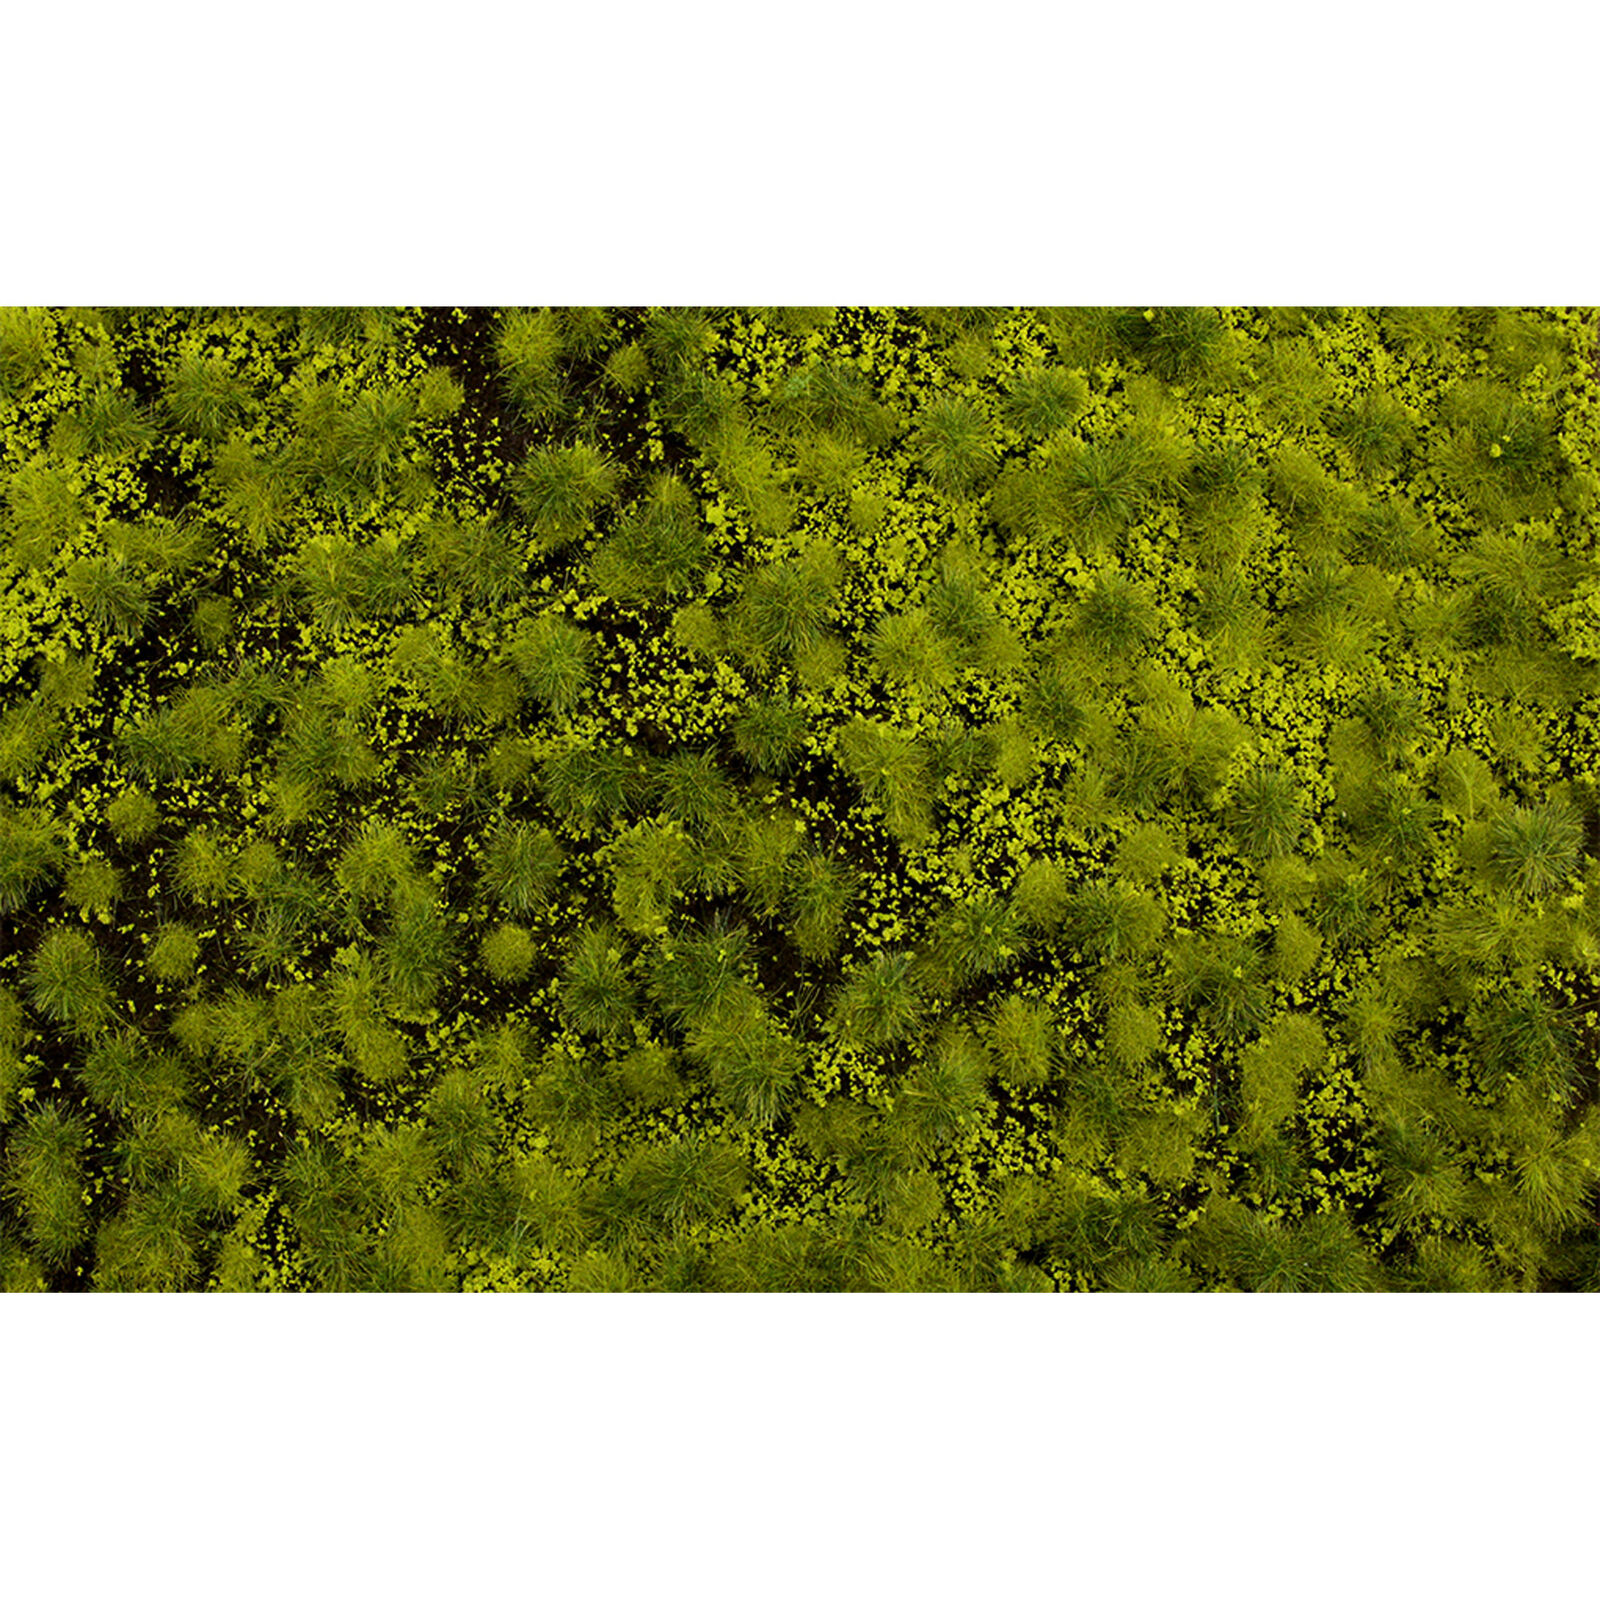 11.75" x 7.5" Tufted Grass Mat Light Green